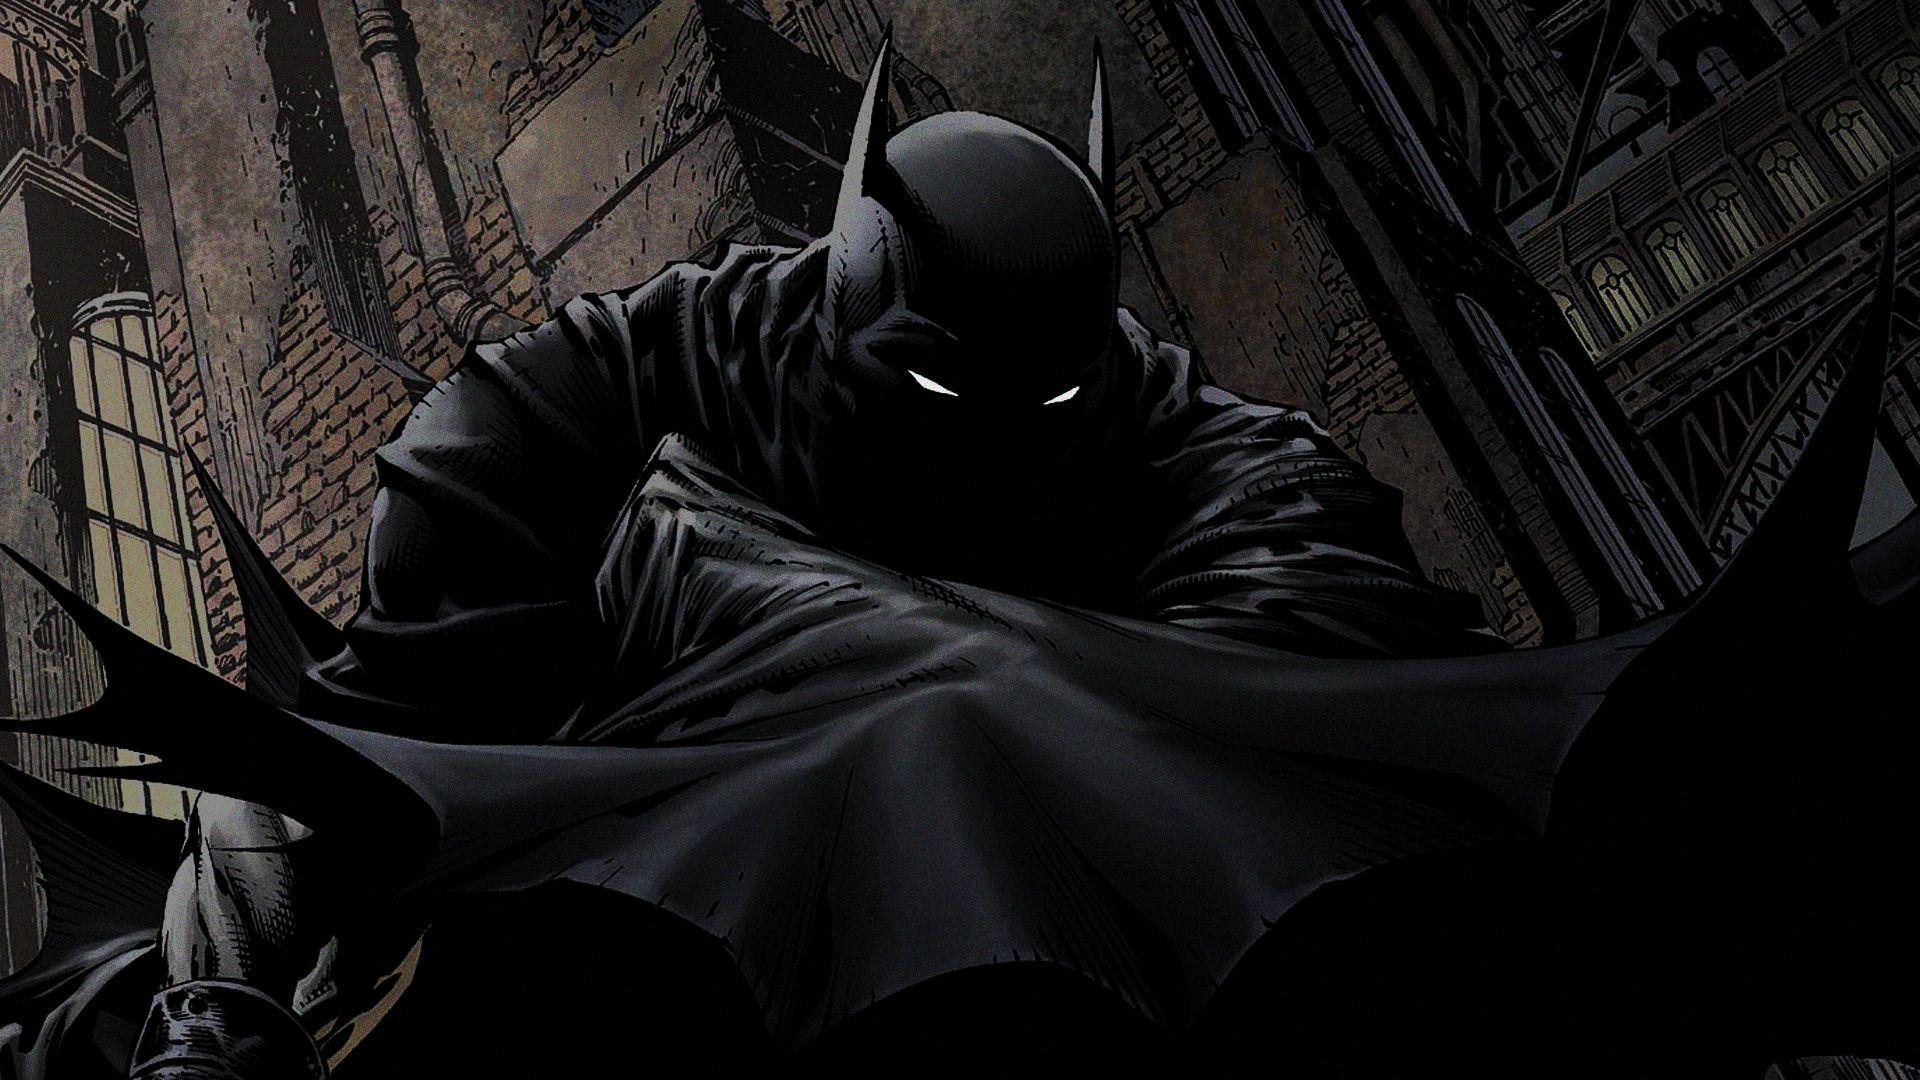 Batman Comic Wallpaper 1080p. Universo dc. Batman